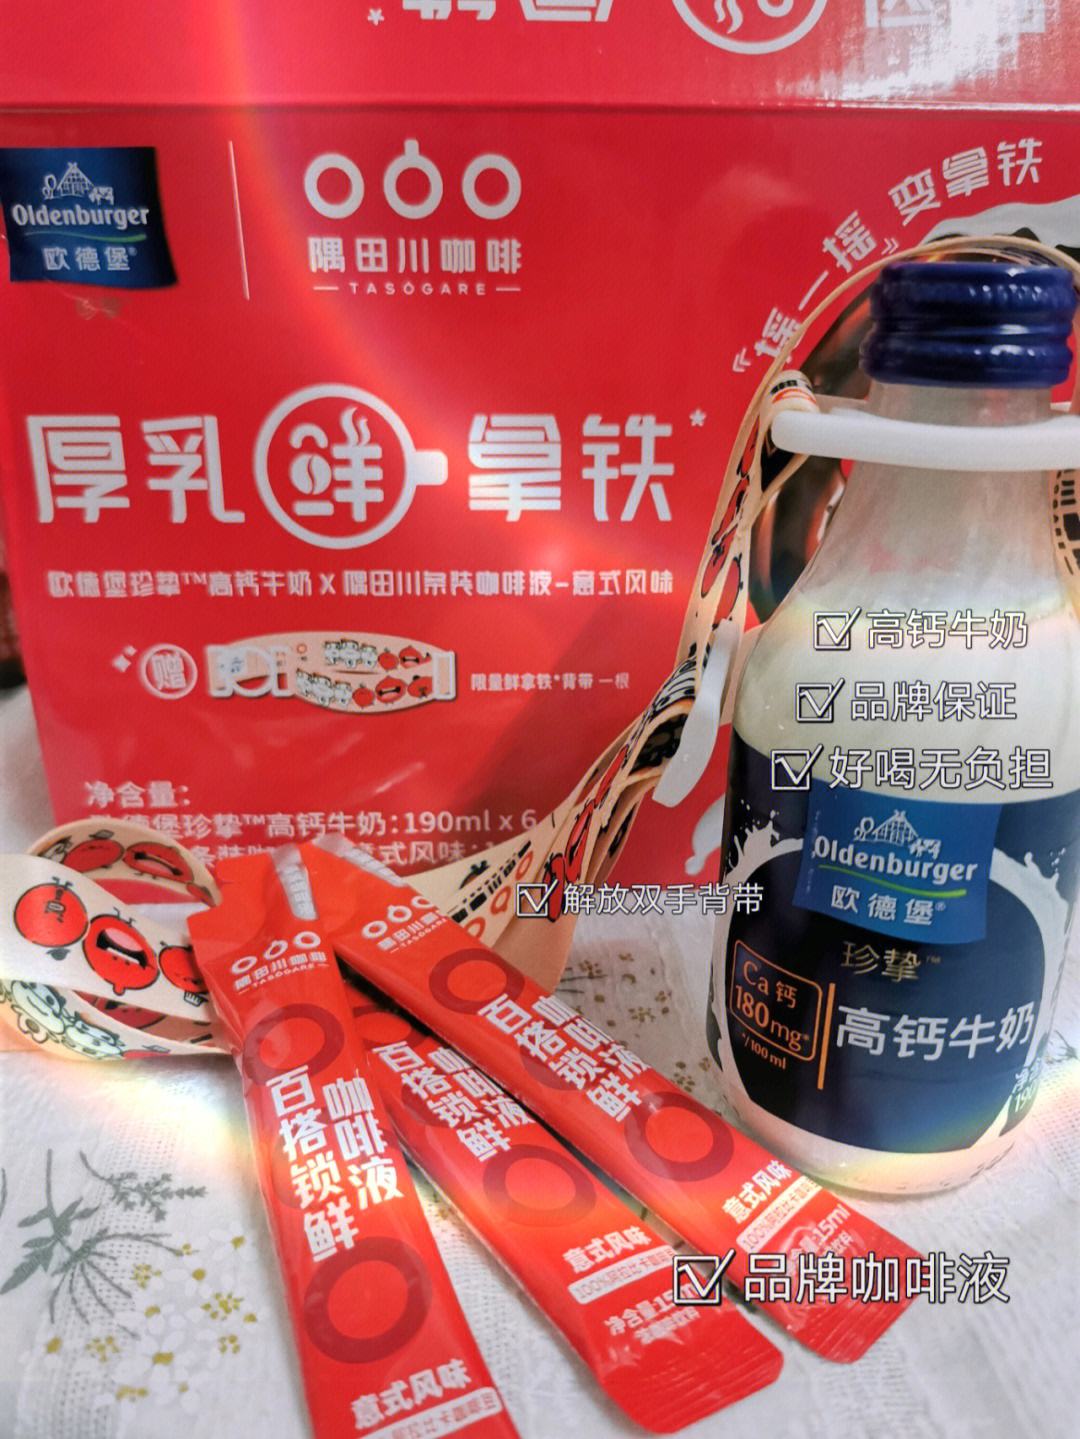 质感小蓝瓶75隅田川咖啡液:只选头道萃取咖啡液,无损风味干净鲜香